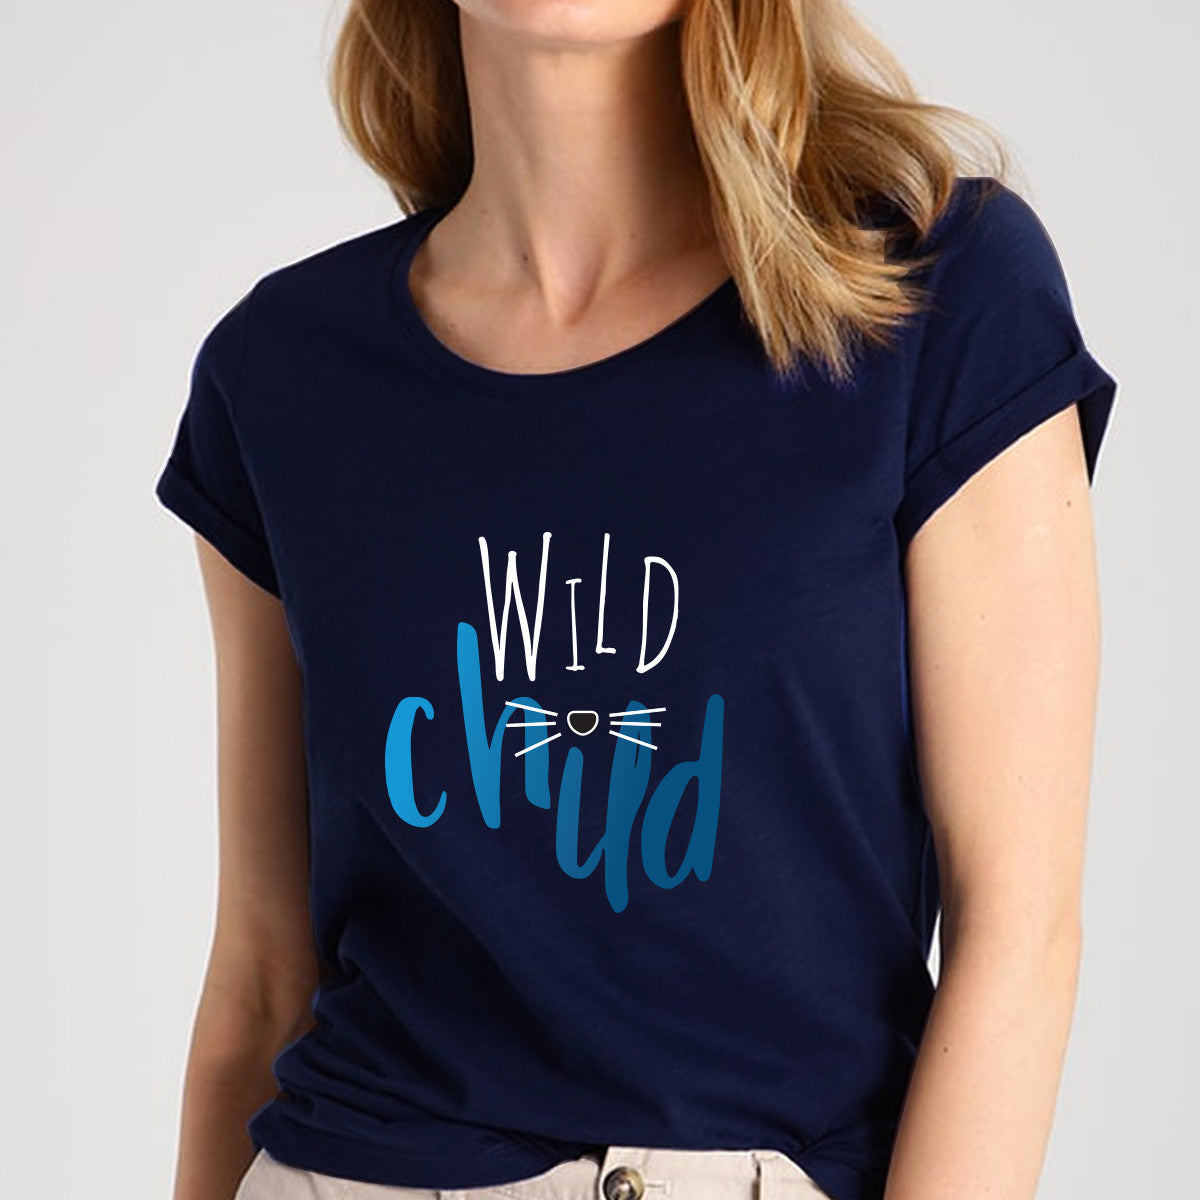 Wild Child Navy Blue T- Shirt